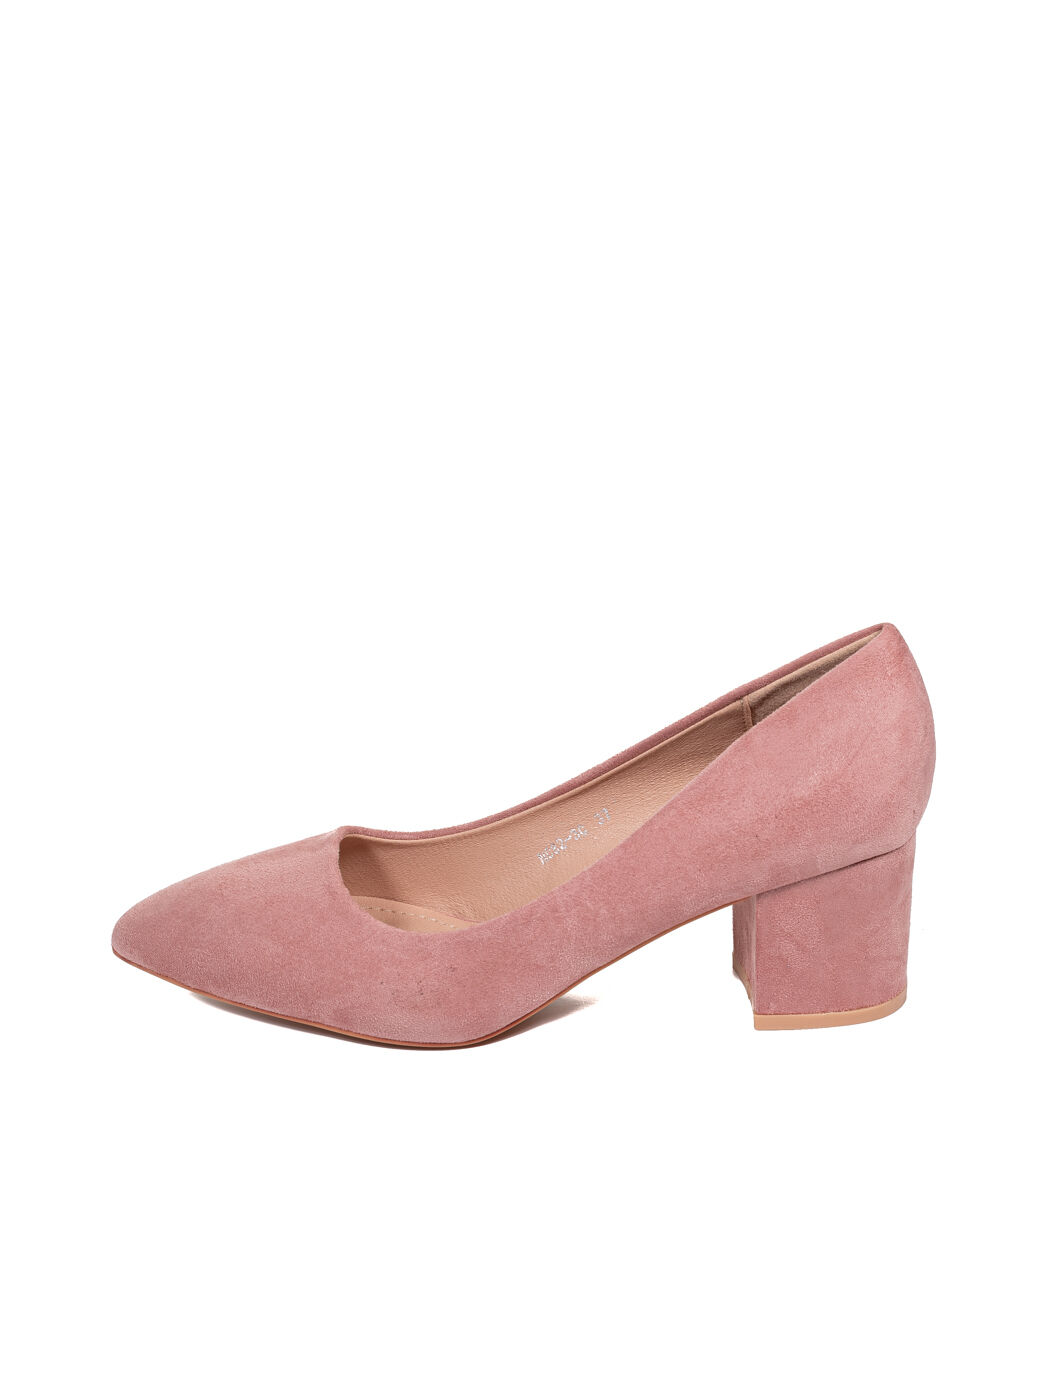 Туфли женские розовые экозамша каблук устойчивый демисезон от производителя CM